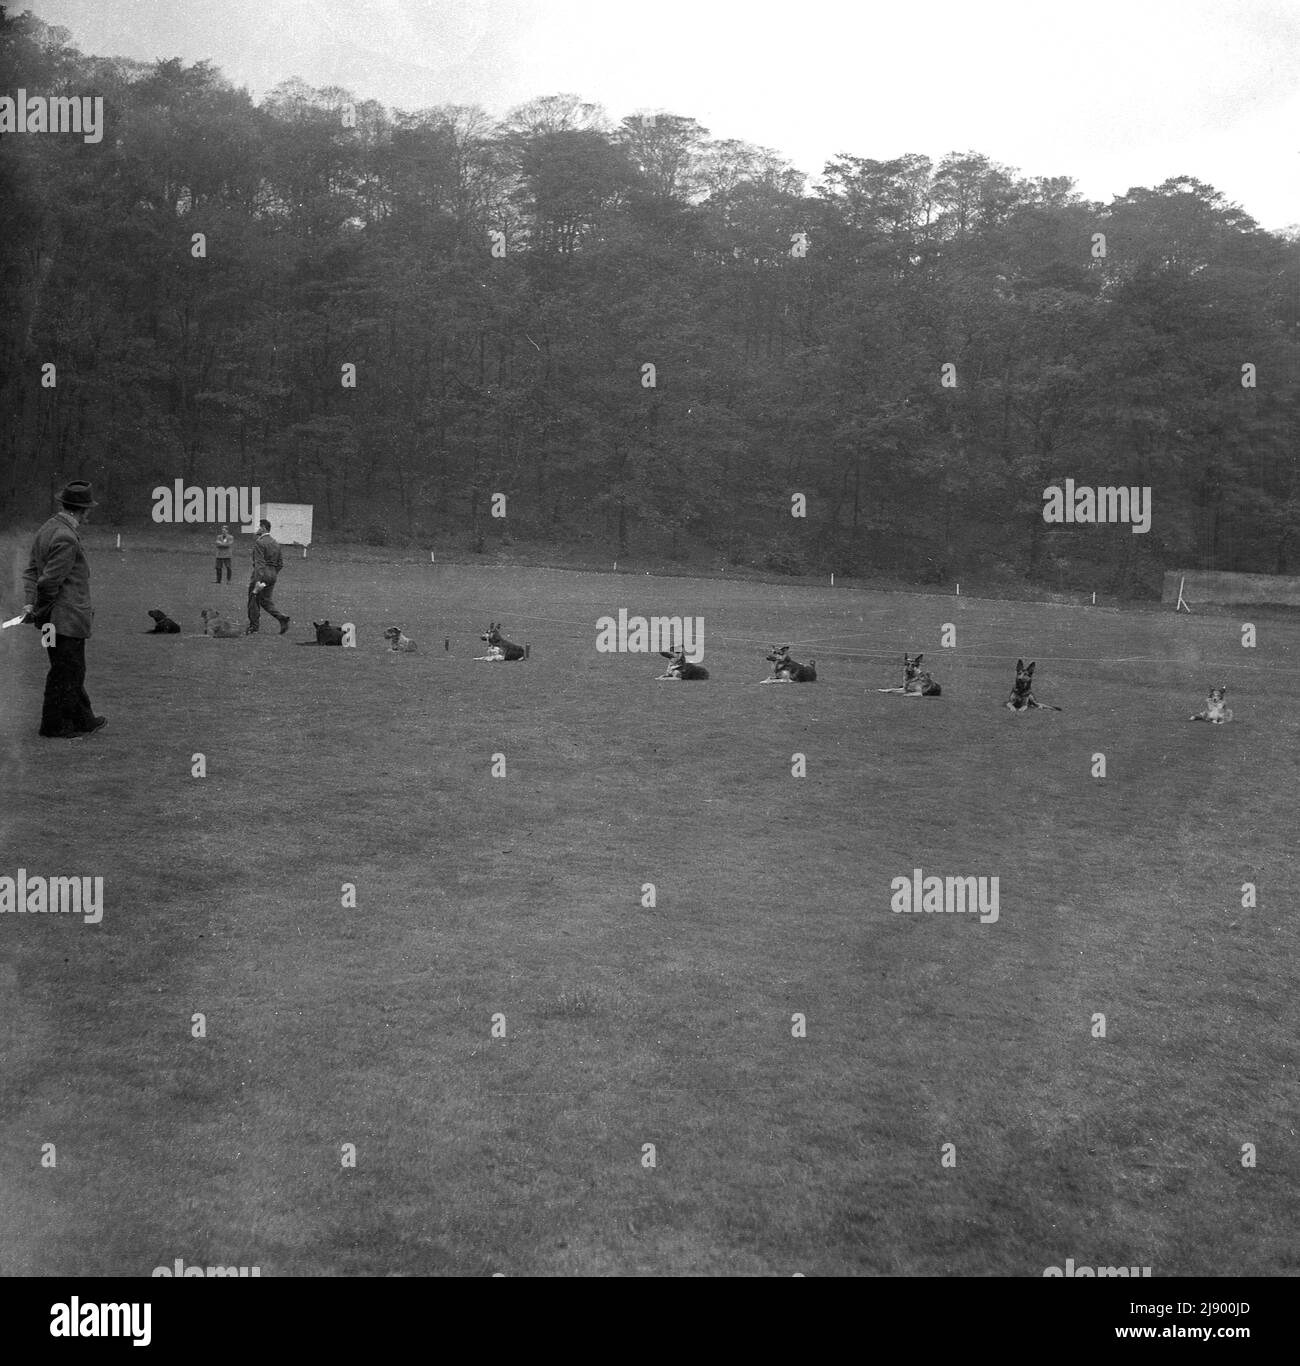 1950s, historisch, Hundetraining, draußen auf einem großen Feld, eine Reihe von Hunden, die auf dem Gras liegen, warten auf eine Anleitung, England, Großbritannien. Stockfoto